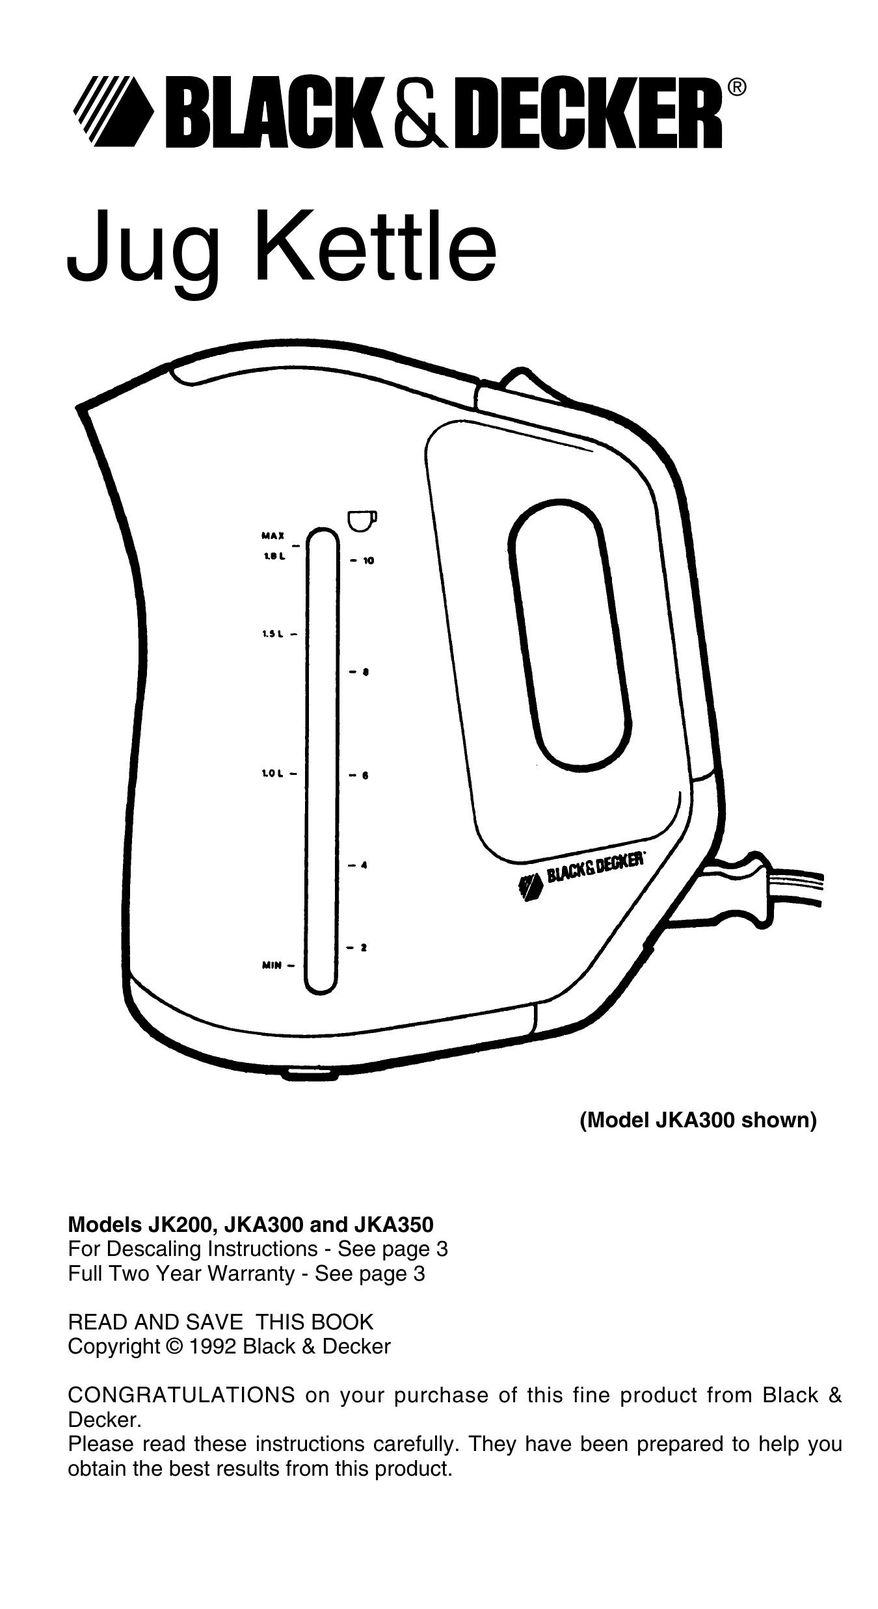 Black & Decker JK200 Hot Beverage Maker User Manual